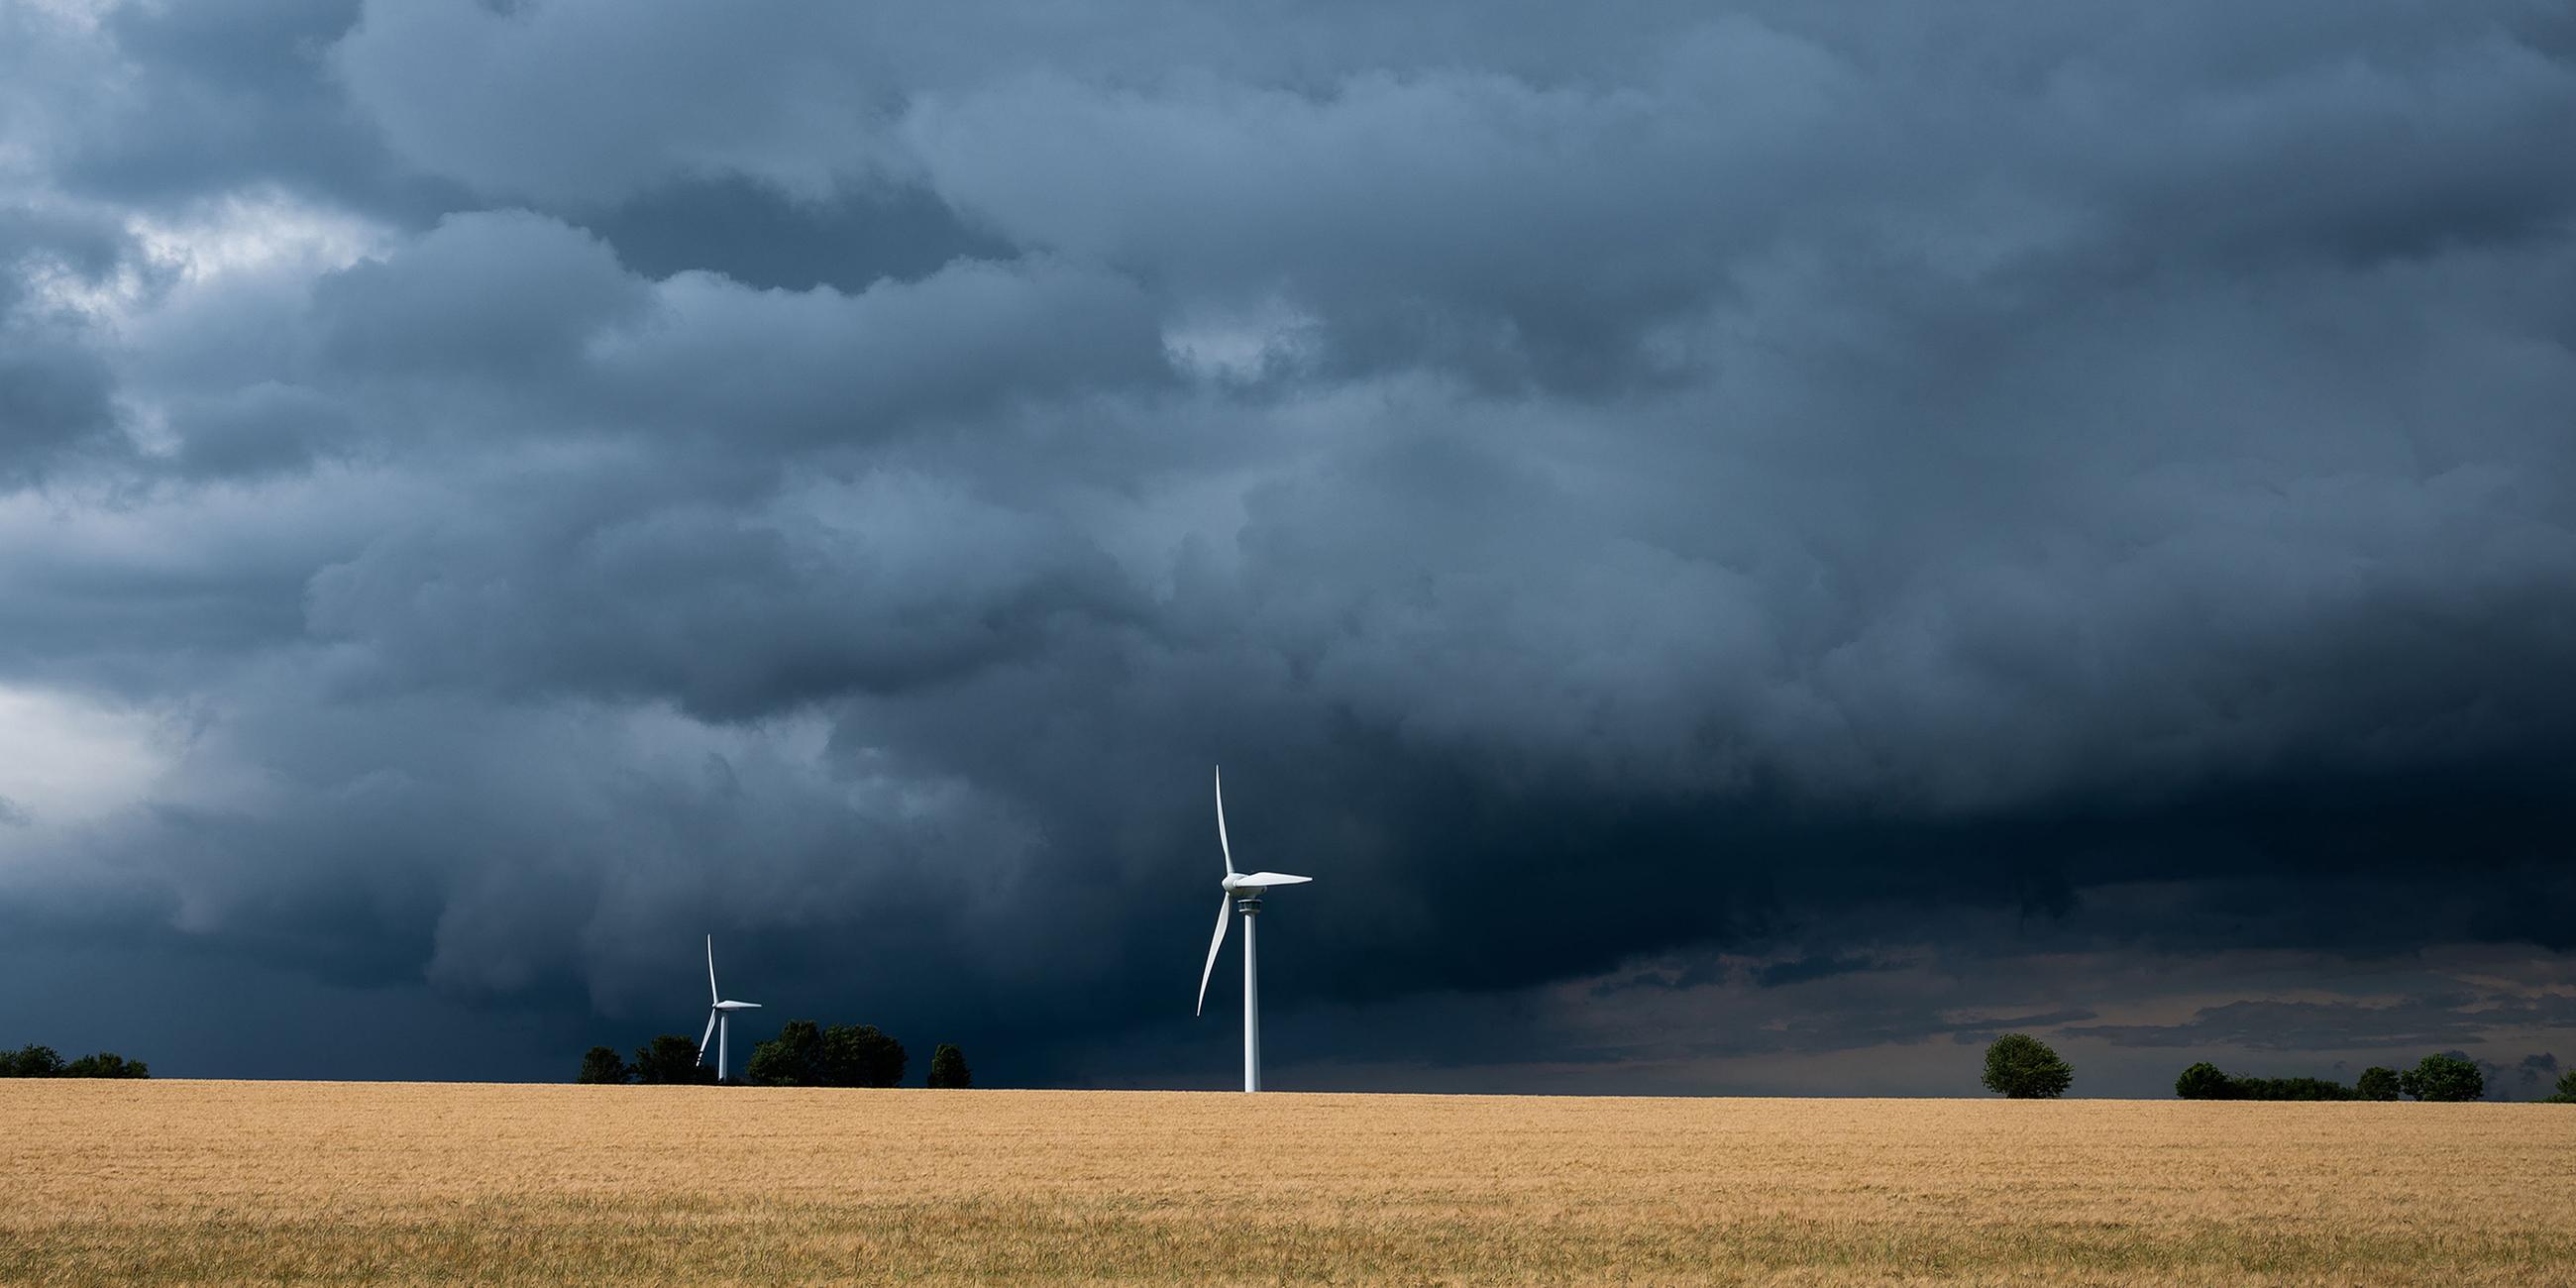 Niedersachsen, Hannover: Eine Gewitterzelle mit dunklen Wolken zieht über Windräder in der Region Hannover hinweg.